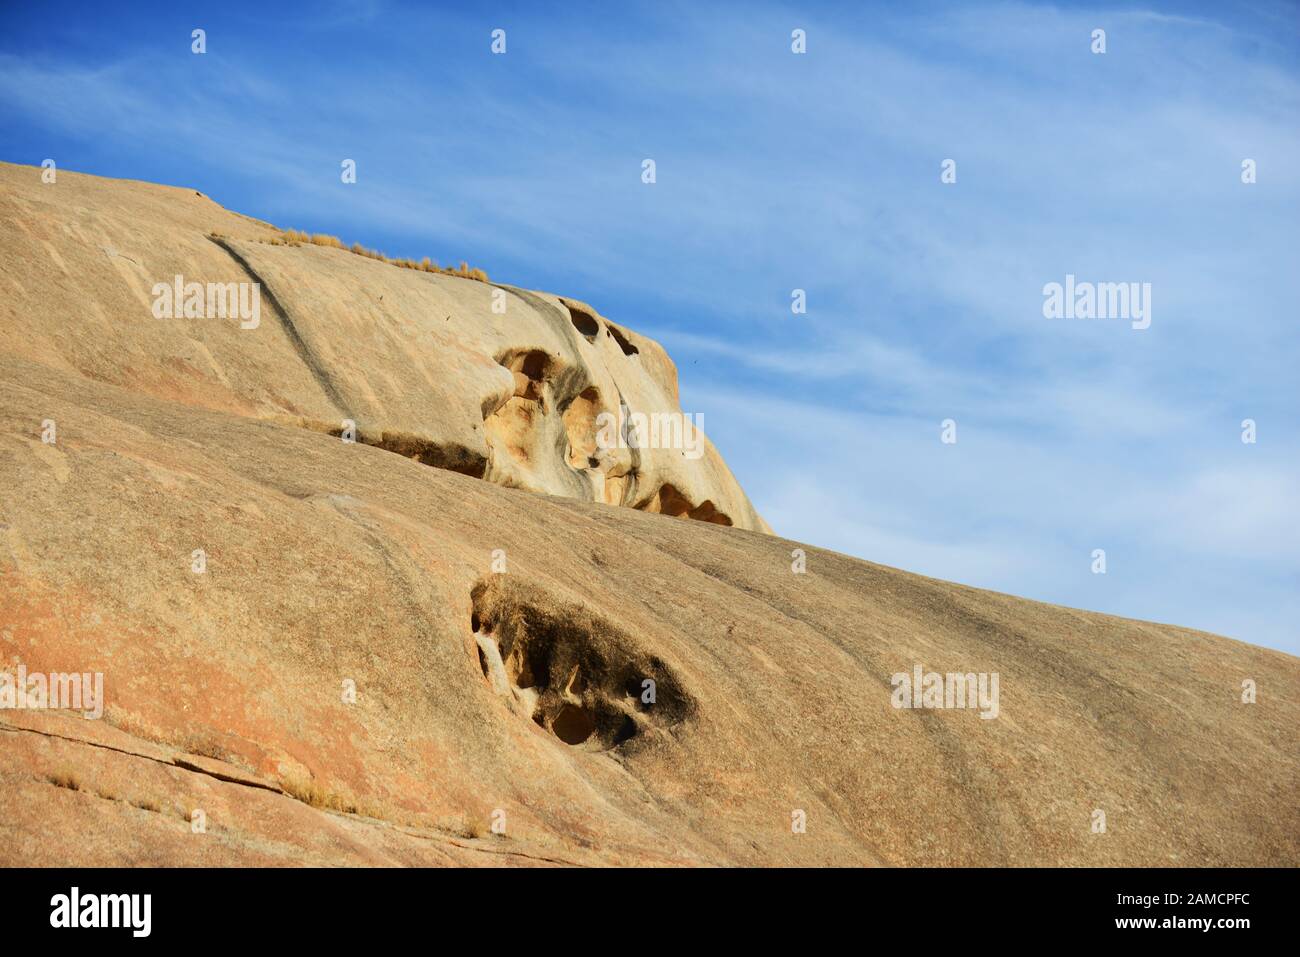 Les collines Rocheuses de la chaîne Aravalli abritent une population florissante de léopards. Banque D'Images